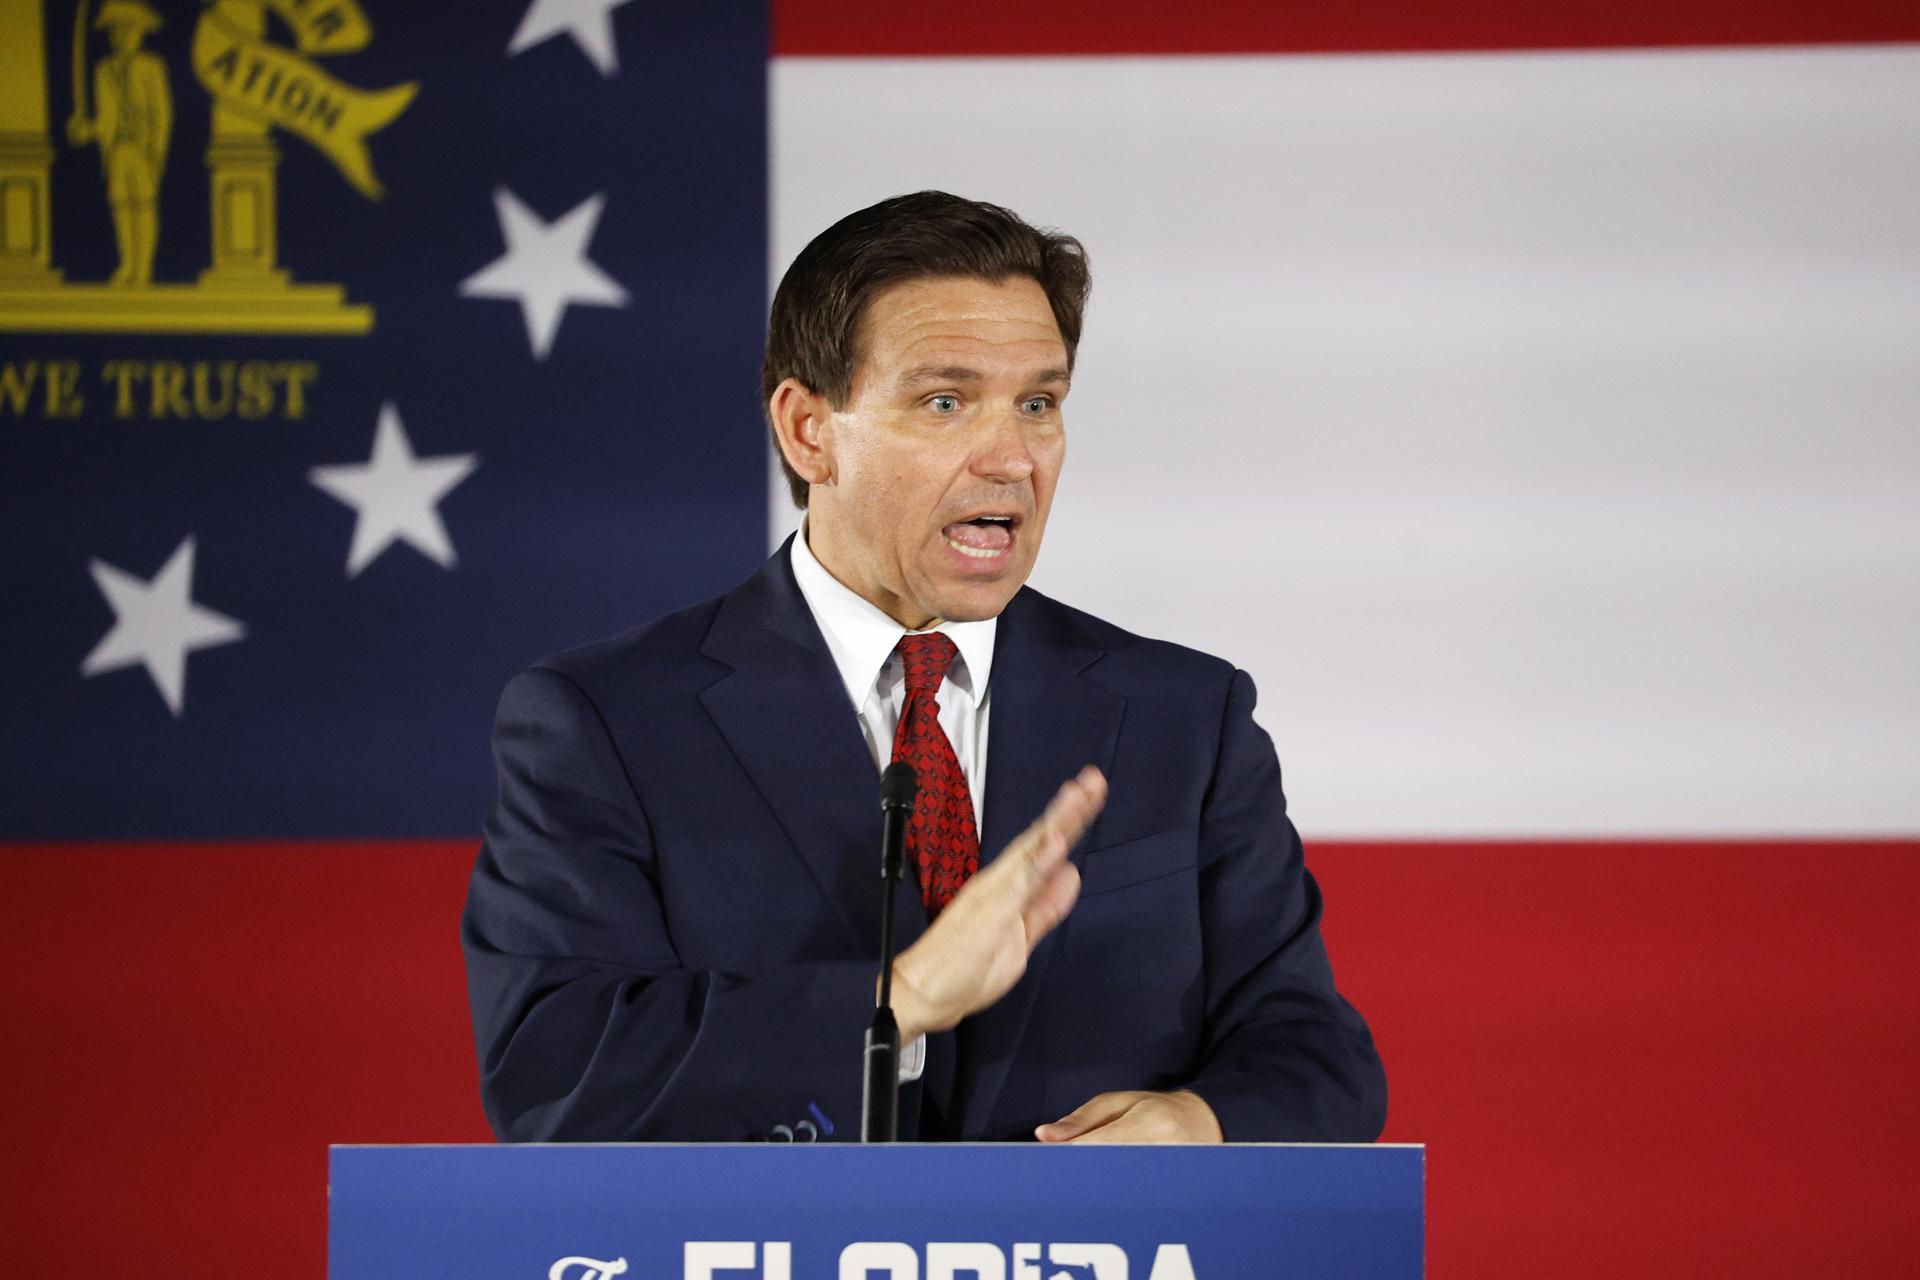 El gobernador de Florida suspendió al concejal Díaz de la Portilla, tras el arresto por corrupción